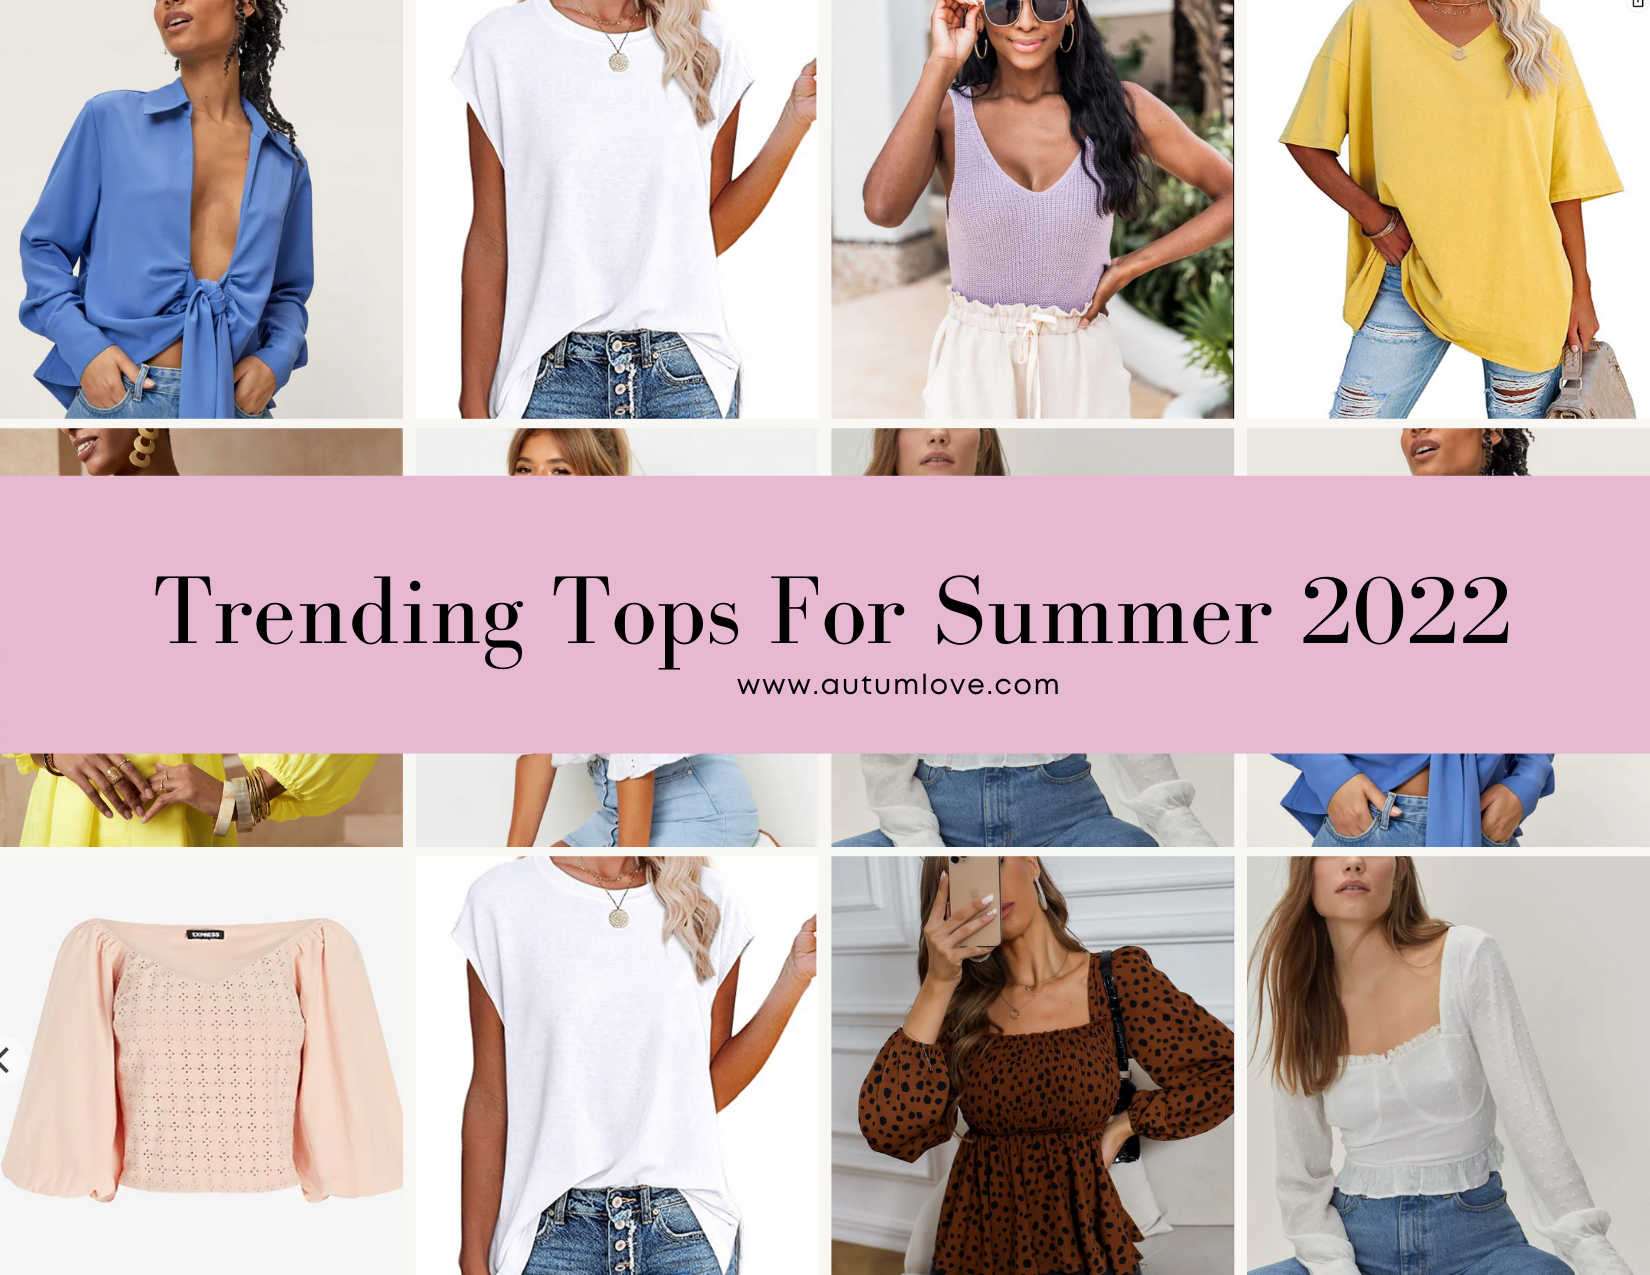 Shop 's List Of Women's Trendy Summer Tops, 53% OFF